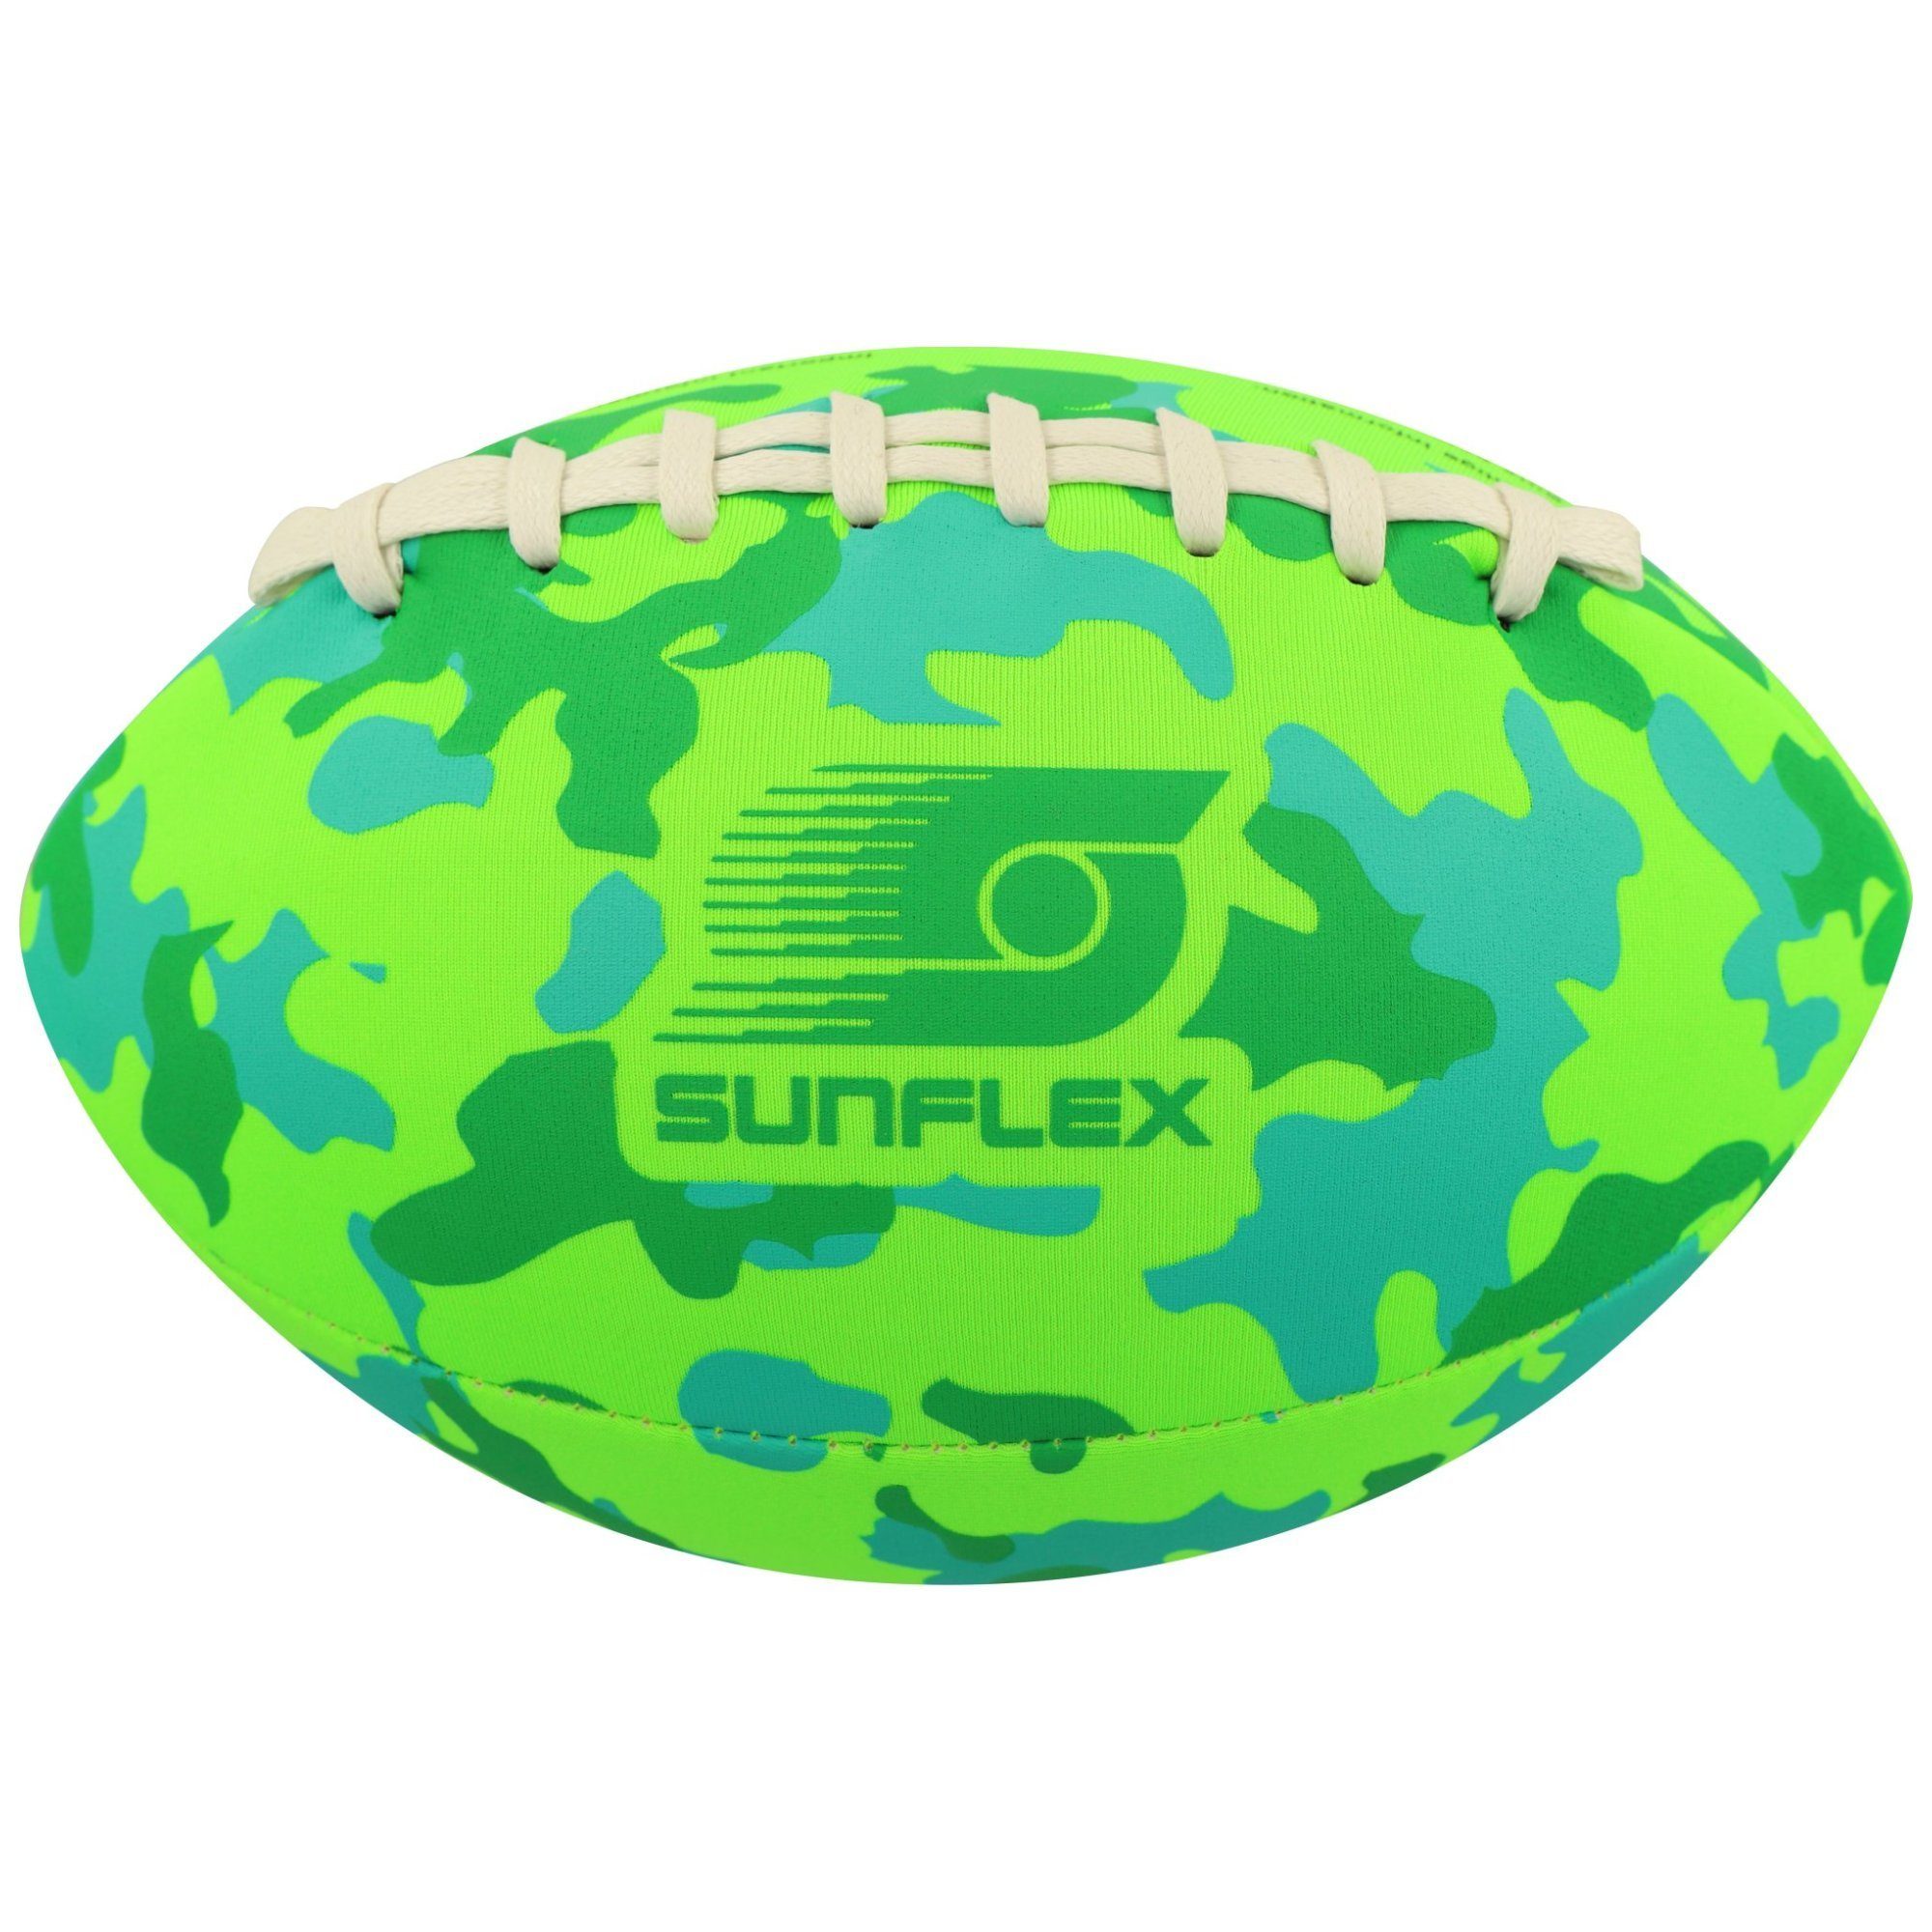 Football Football Sunflex Camo sunflex American grün